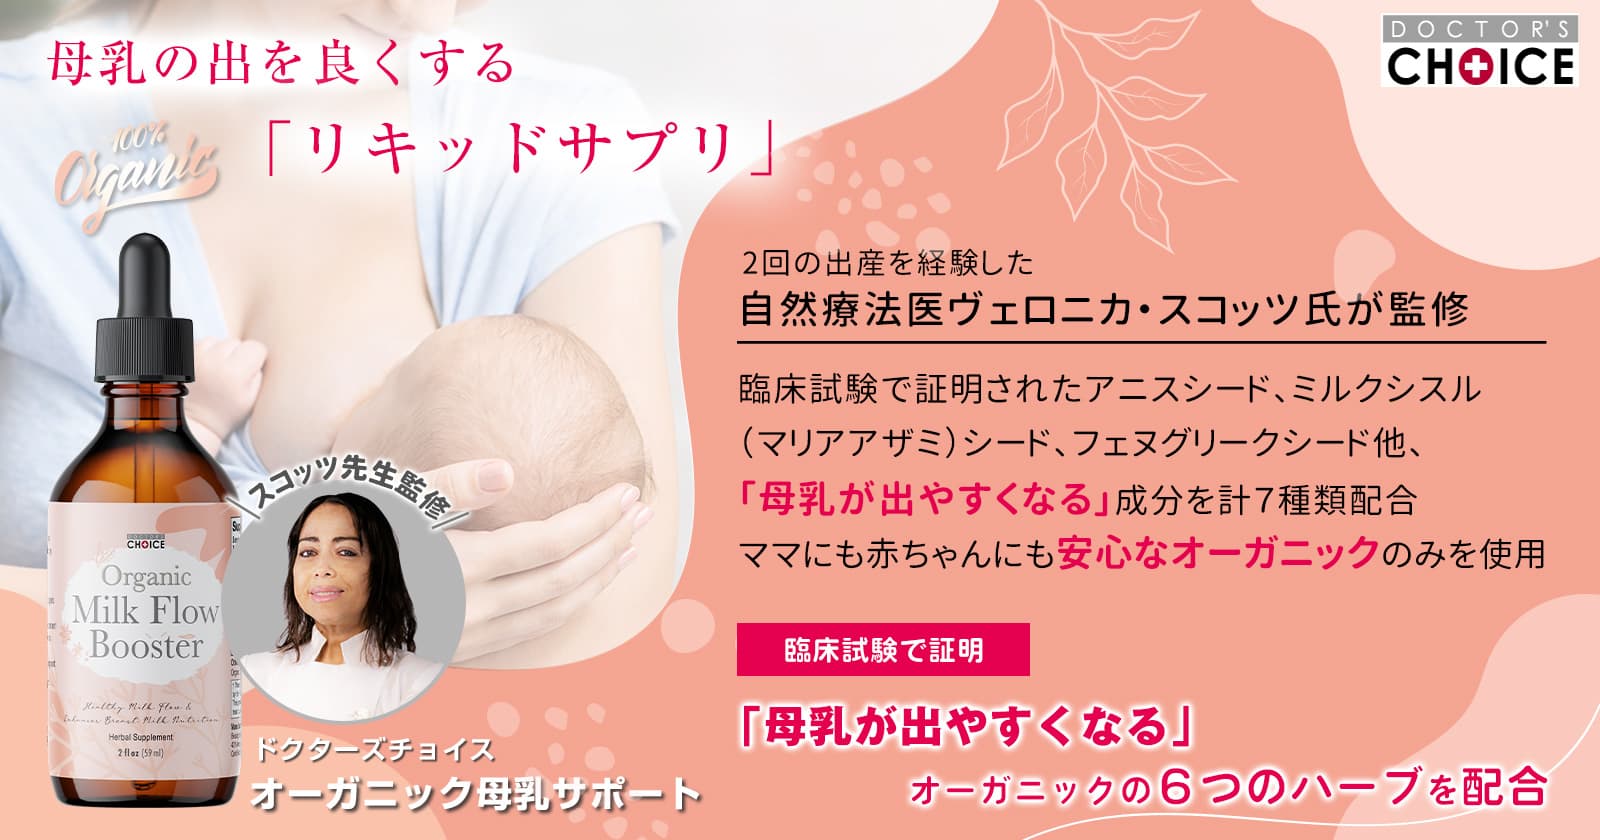 オーガニック母乳サポート:母乳の出を良くするリキッドサプリ。臨床試験で証明「母乳が出やすくなる」オーガニックの６つのハーブを配合